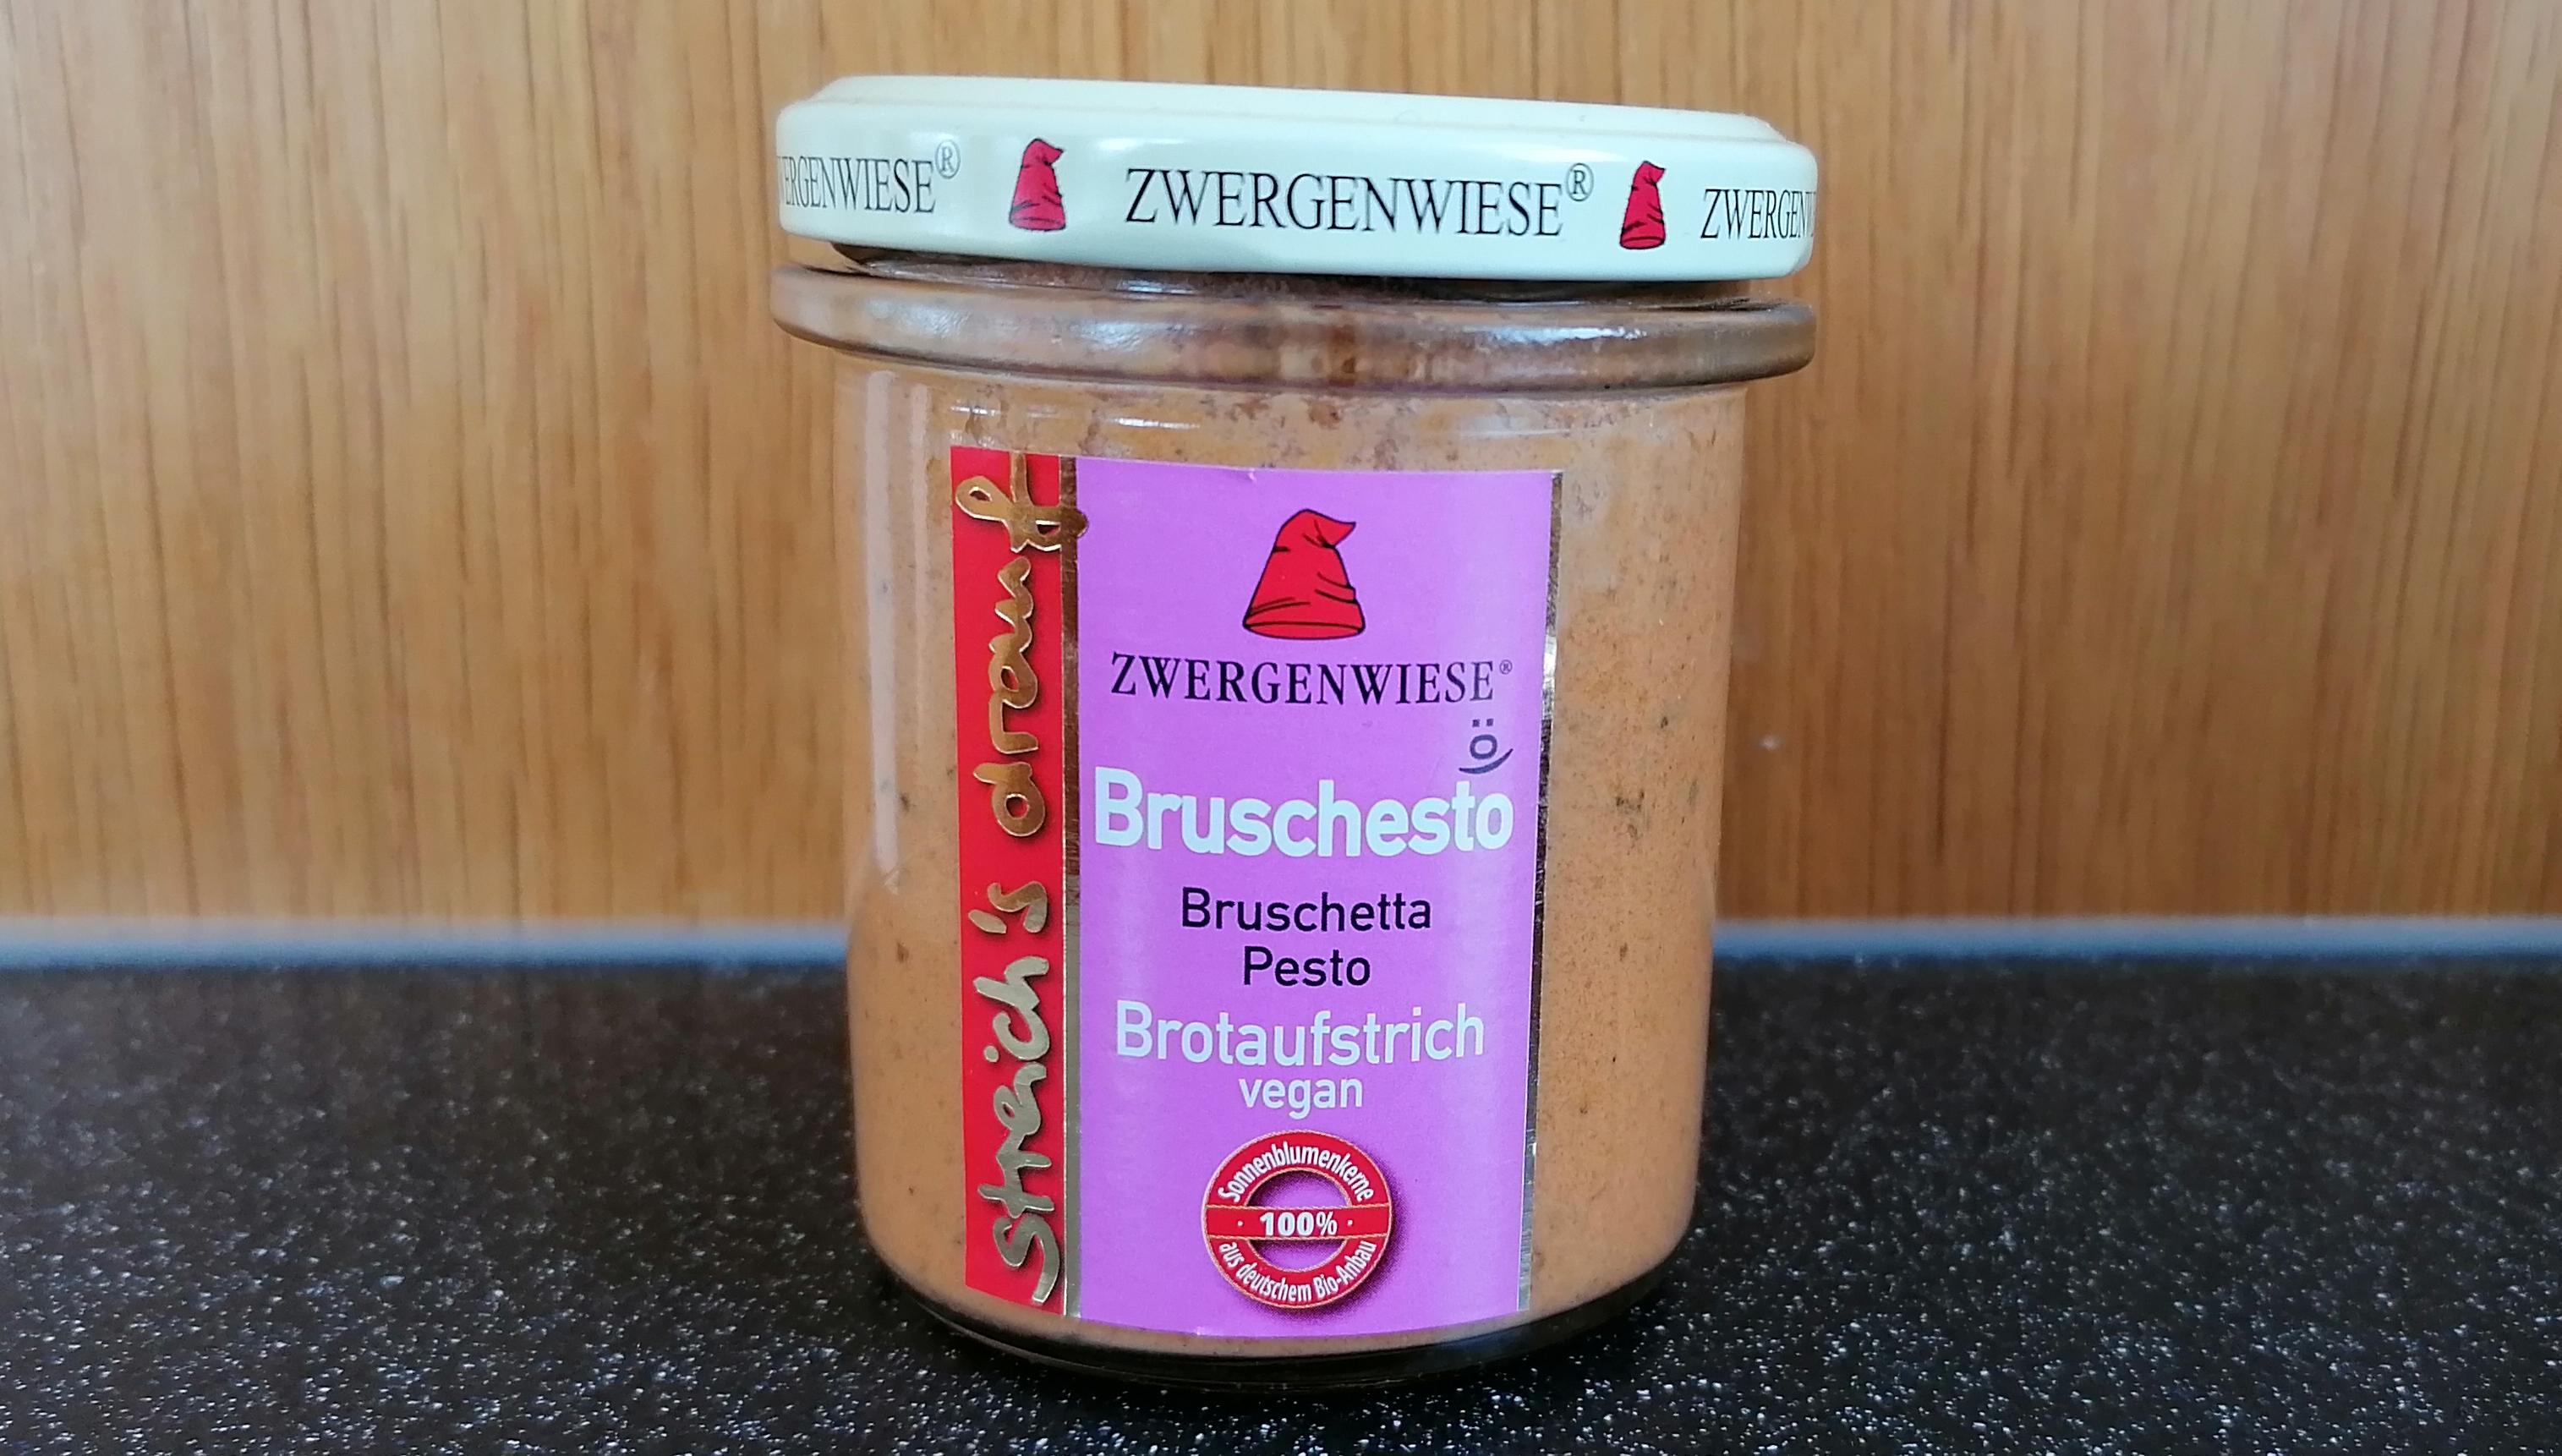 Aufstrich Zwergenwiese: Streich´s drauf - Bruschesto / Bruschetta und Pesto